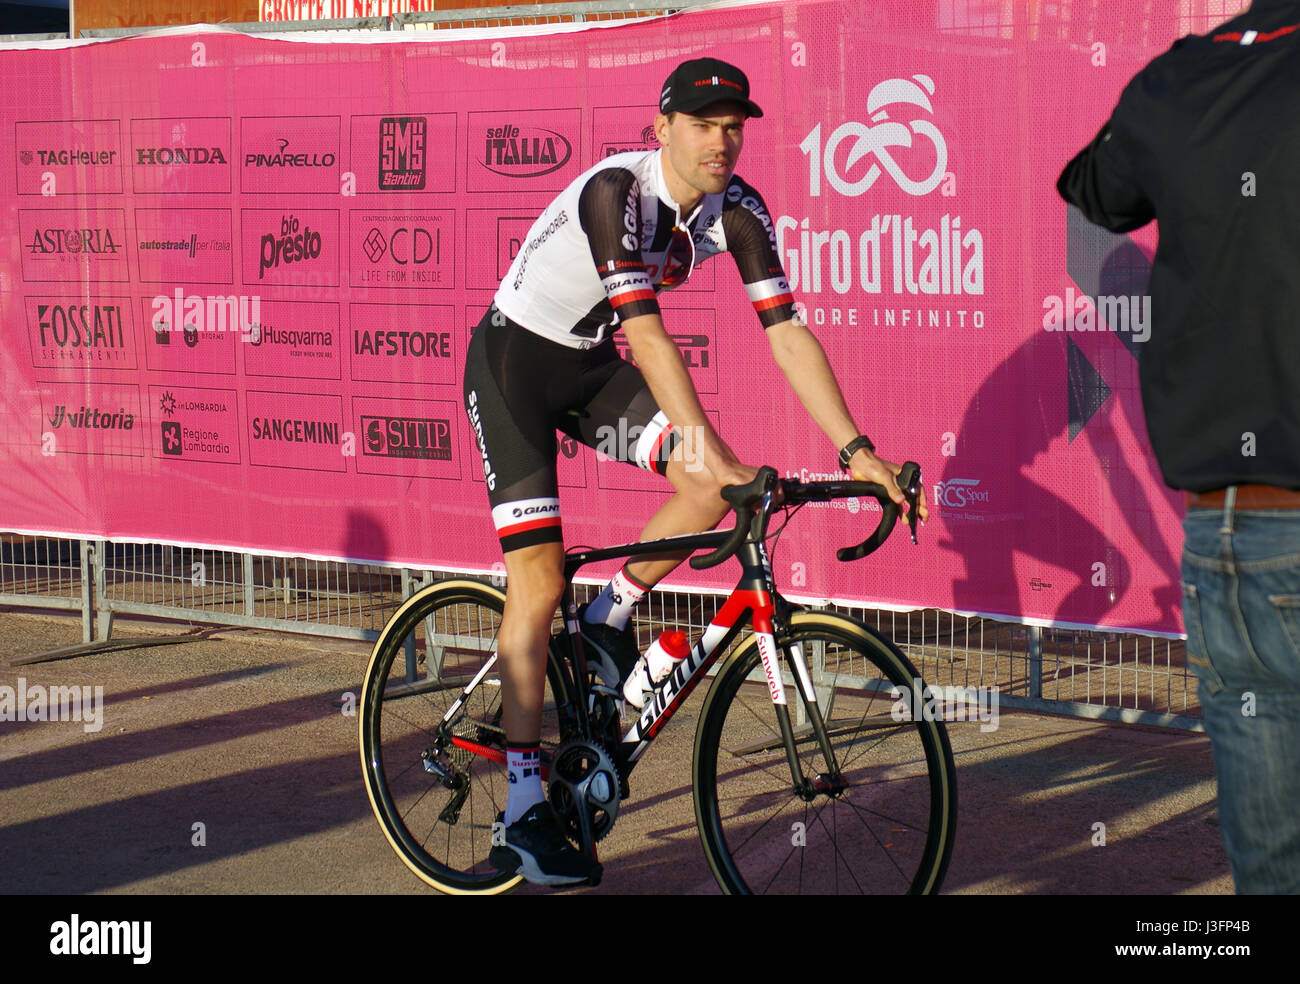 Tom Dumoulin, il ciclista olandese a Alghero, Sardegna, Italia. Maggio 4, 2017 durante la cerimonia di presentazione del Giro d'Italia (Italiano Tour in Bicicletta) Foto Stock